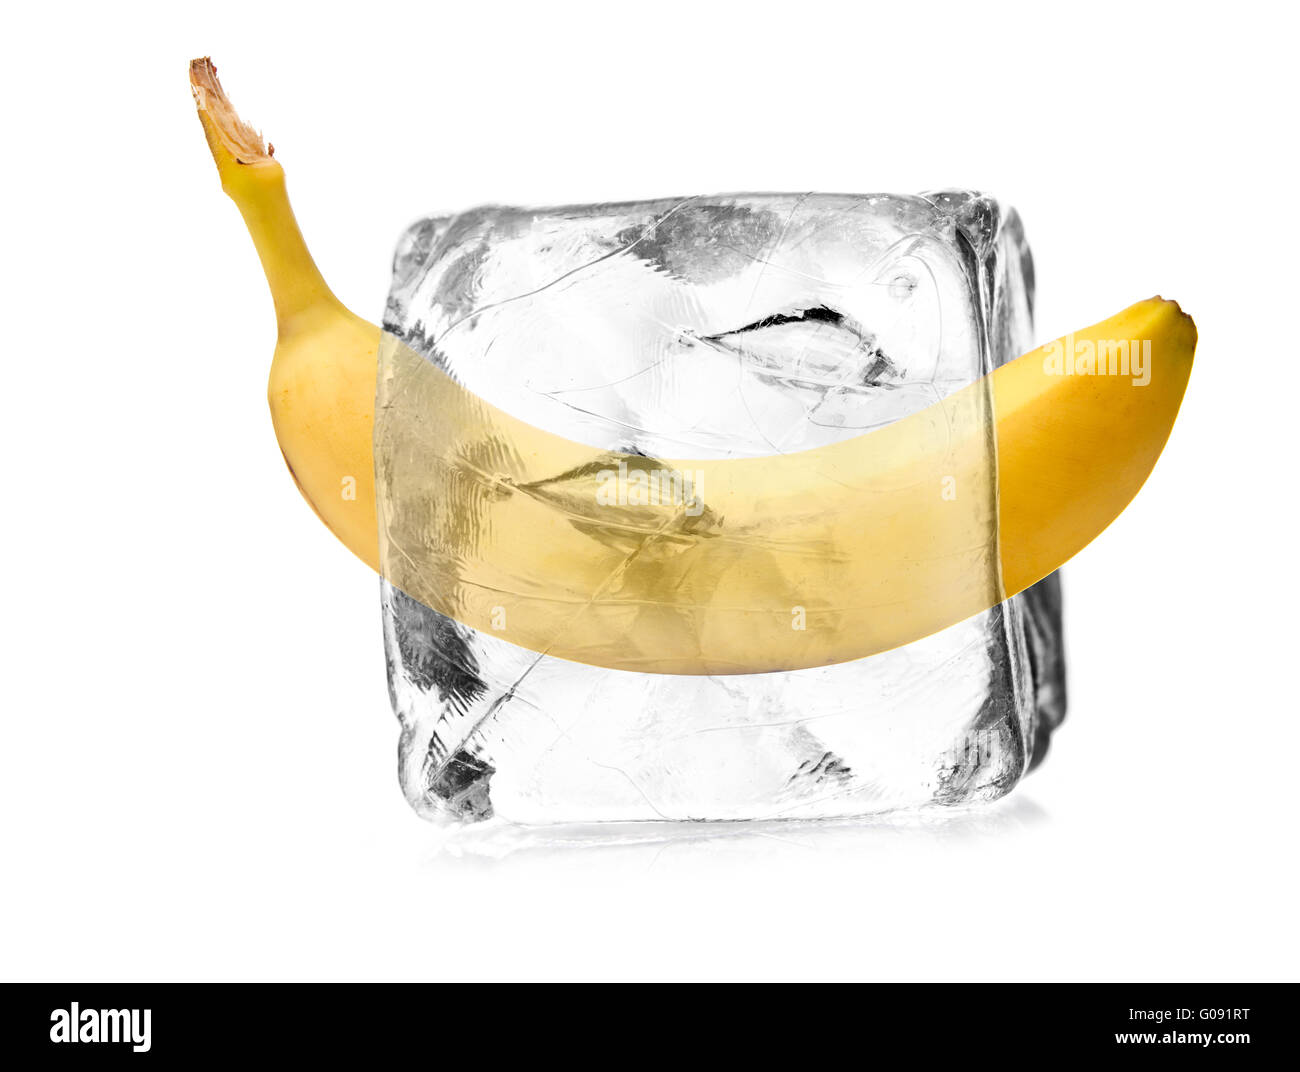 Banana in un cubo di ghiaccio isolato, sfondo bianco Foto Stock